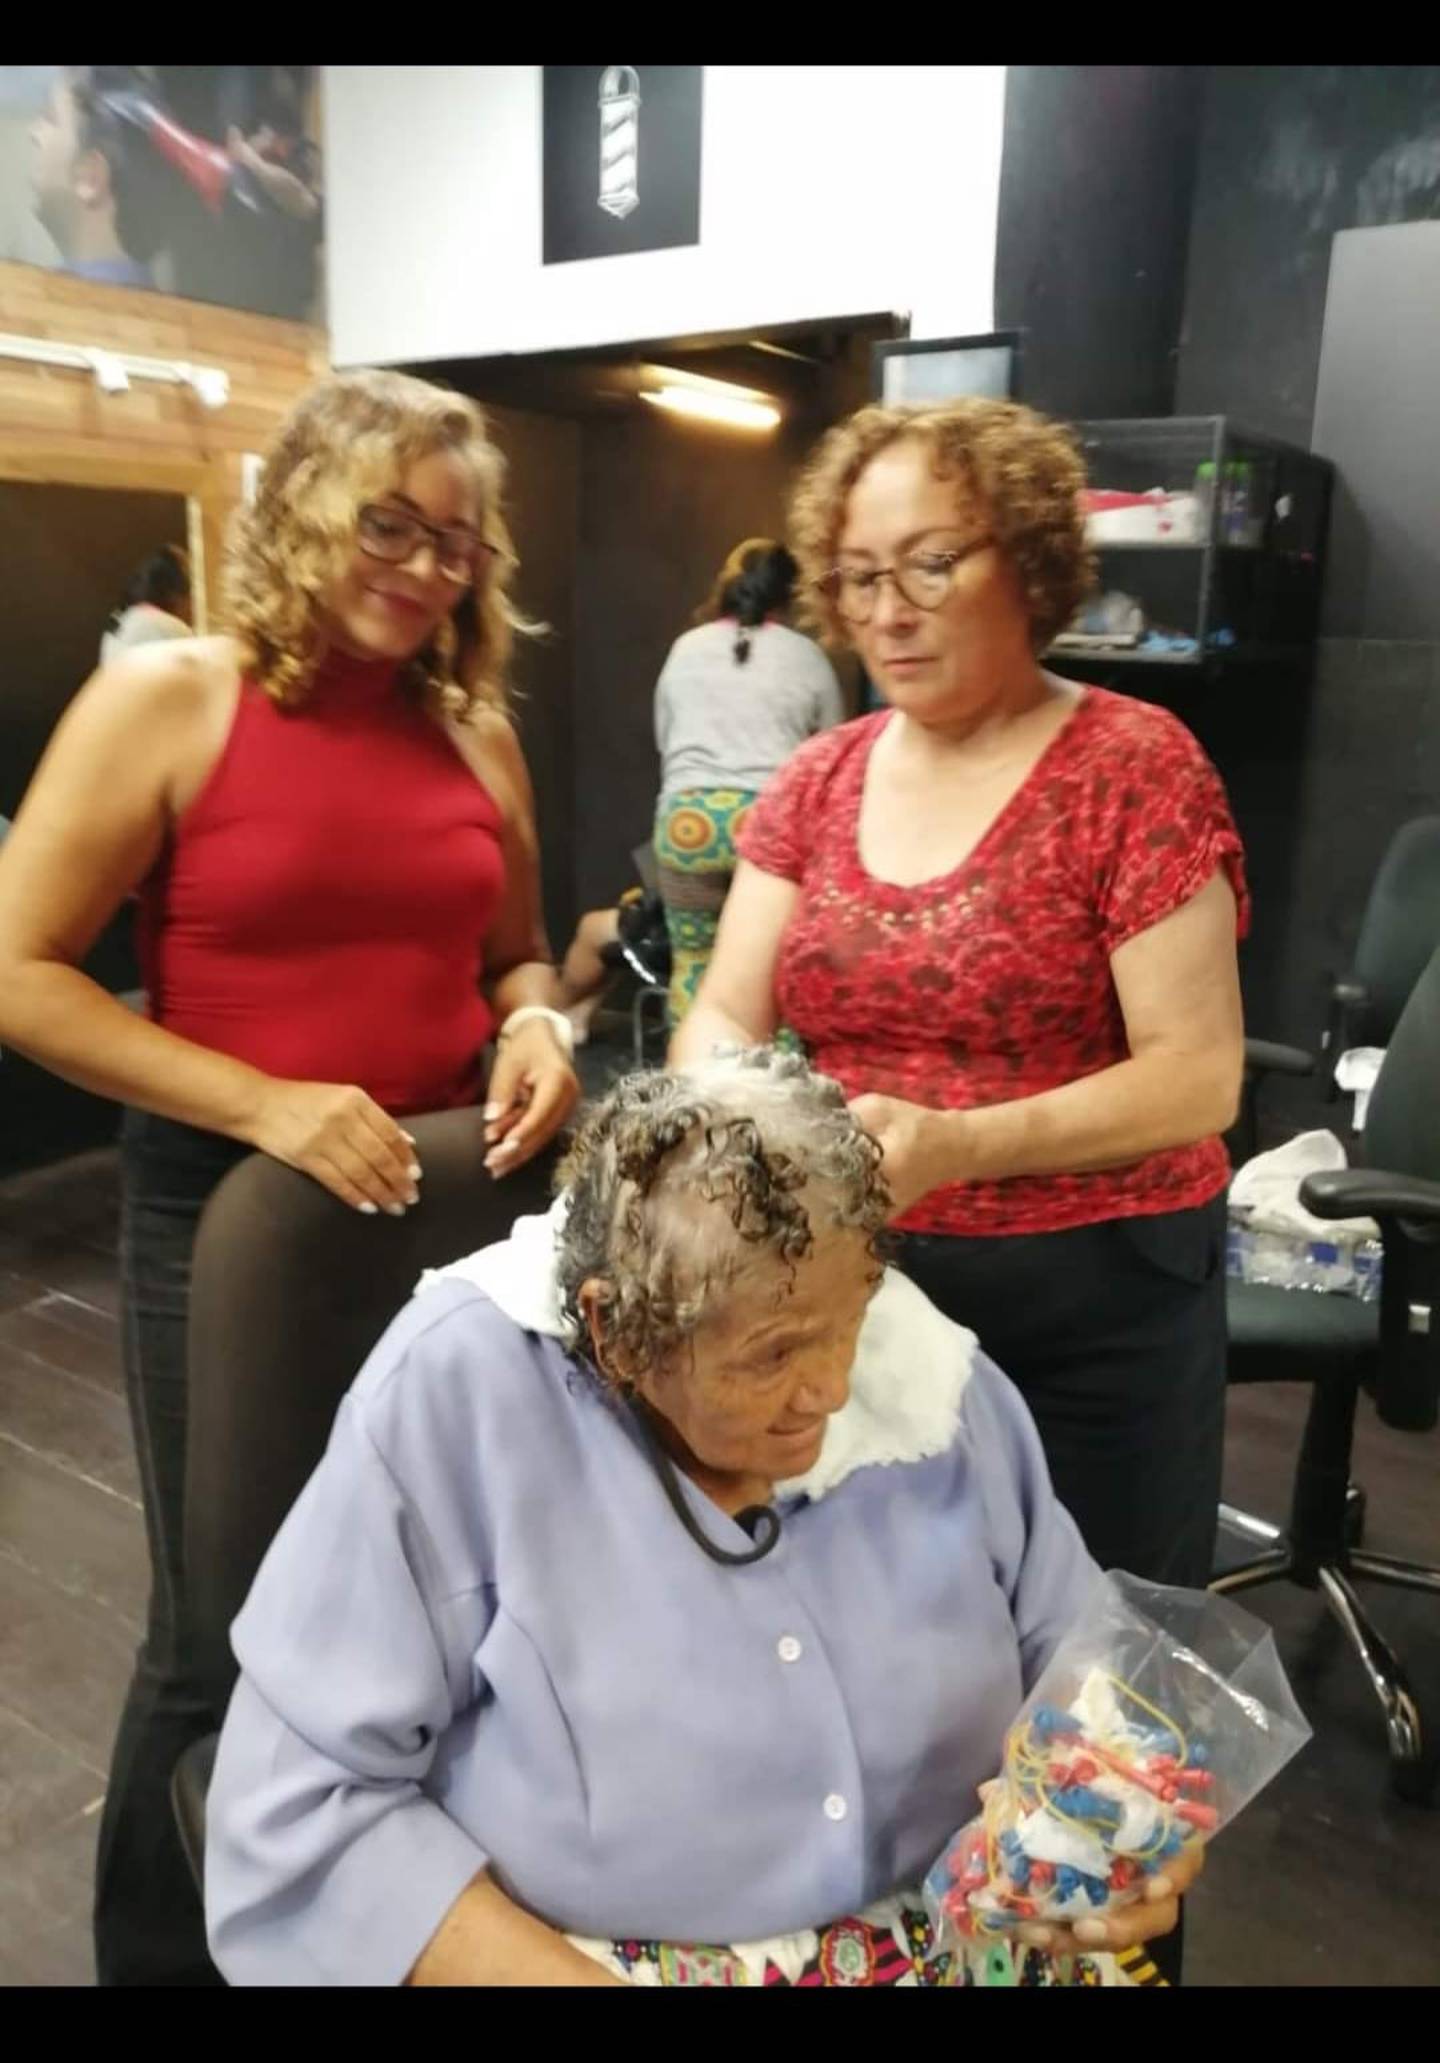 Doña Rosa Hernández logró graduarse de barbera, a sus 77 años.